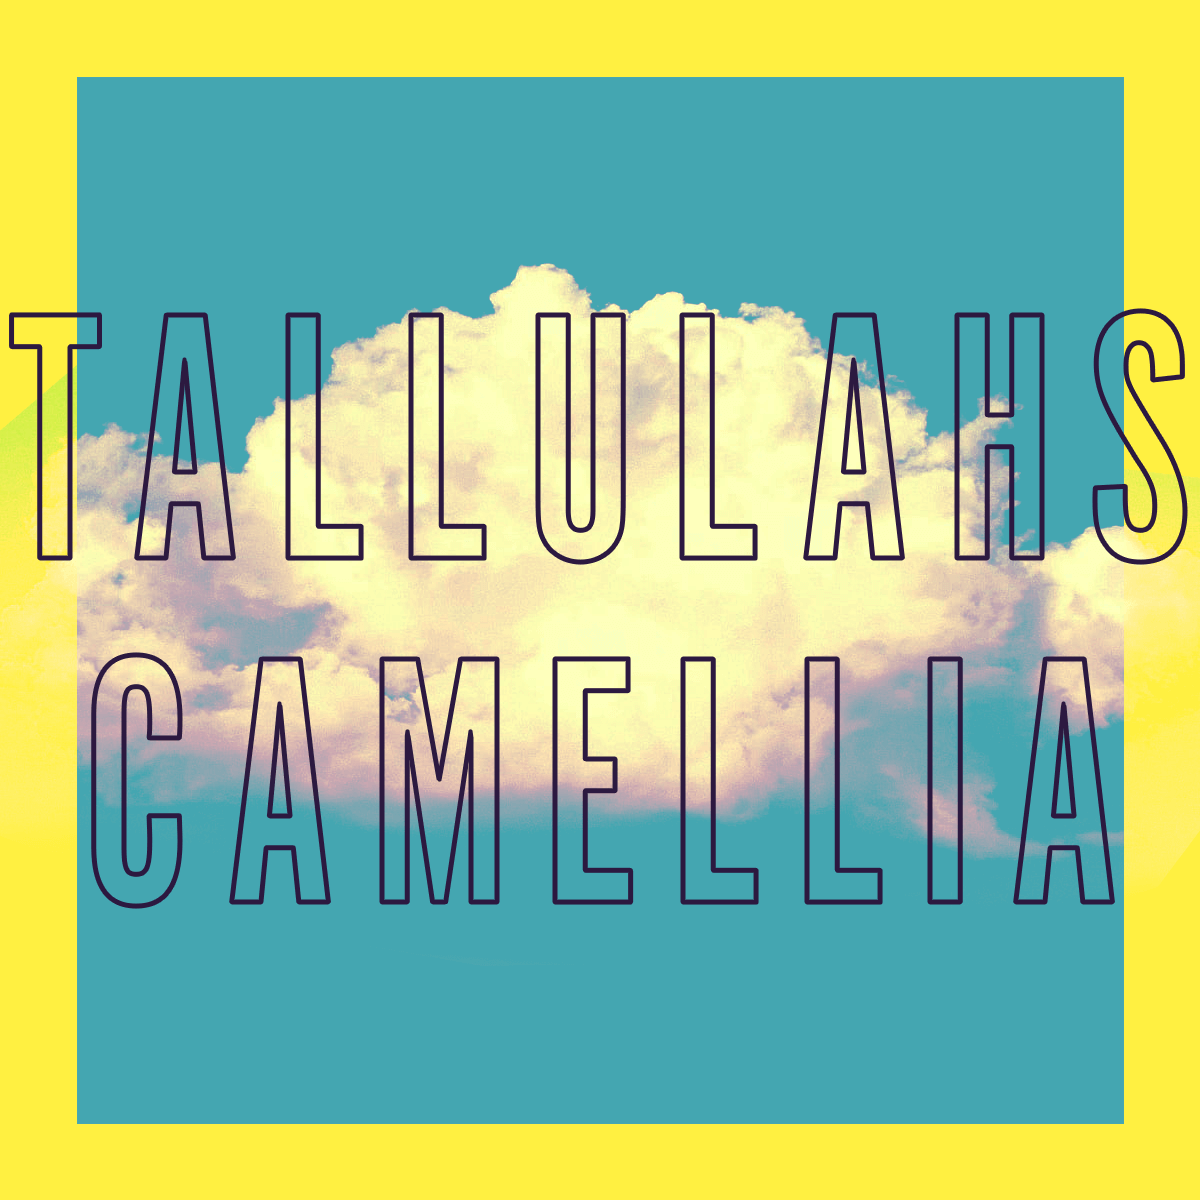 Tallulahs Camellia Fragrance 0.3oz